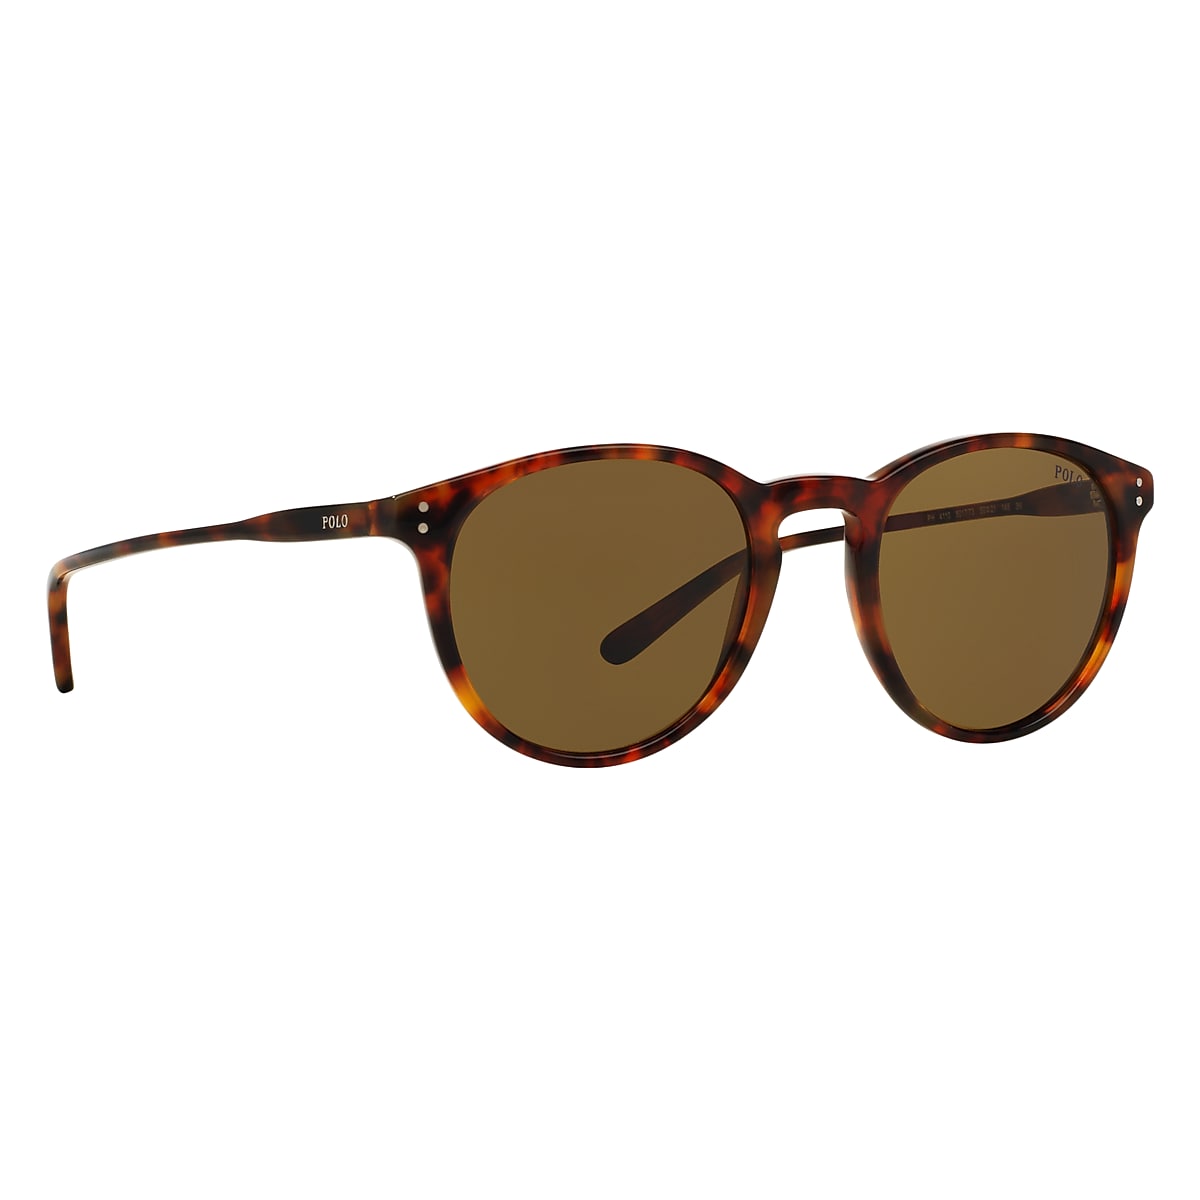 Risikabel Hubert Hudson Mystisk Polo Ralph Lauren Havana Sunglasses | Glasses.com® | Free Shipping